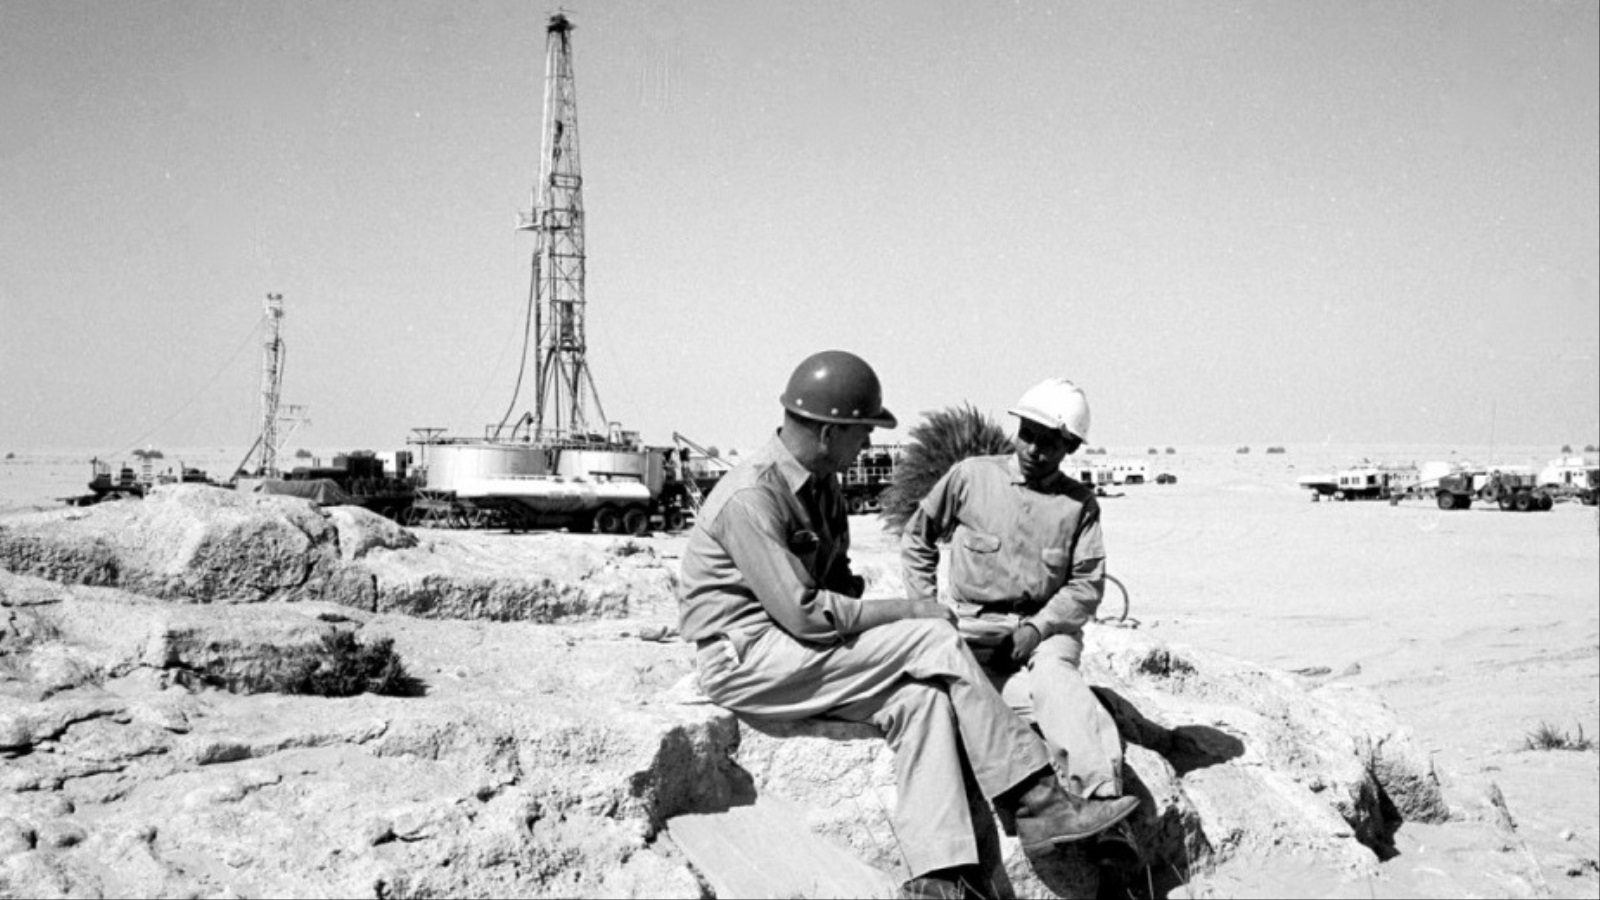 تسريب مشروع بريطاني سرّي للهجوم على المنشآت النفطية في الشرق الاوسط